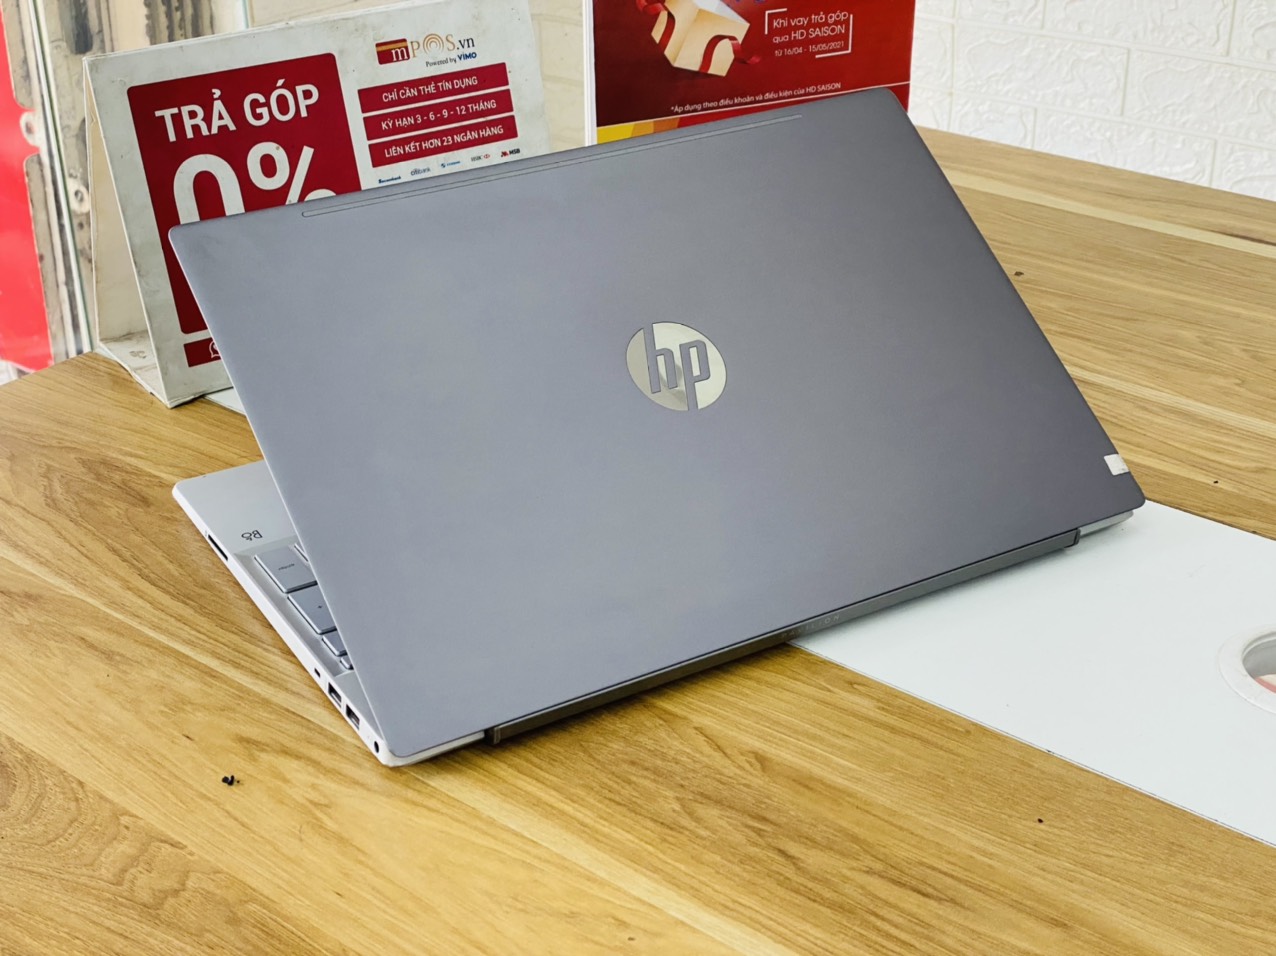 Laptop HP Pavilion 15-cs1044TX i5-8265U Ram 8G SSD 128G HDD 1TB Nvidia MX130 15.6 inch Full HD